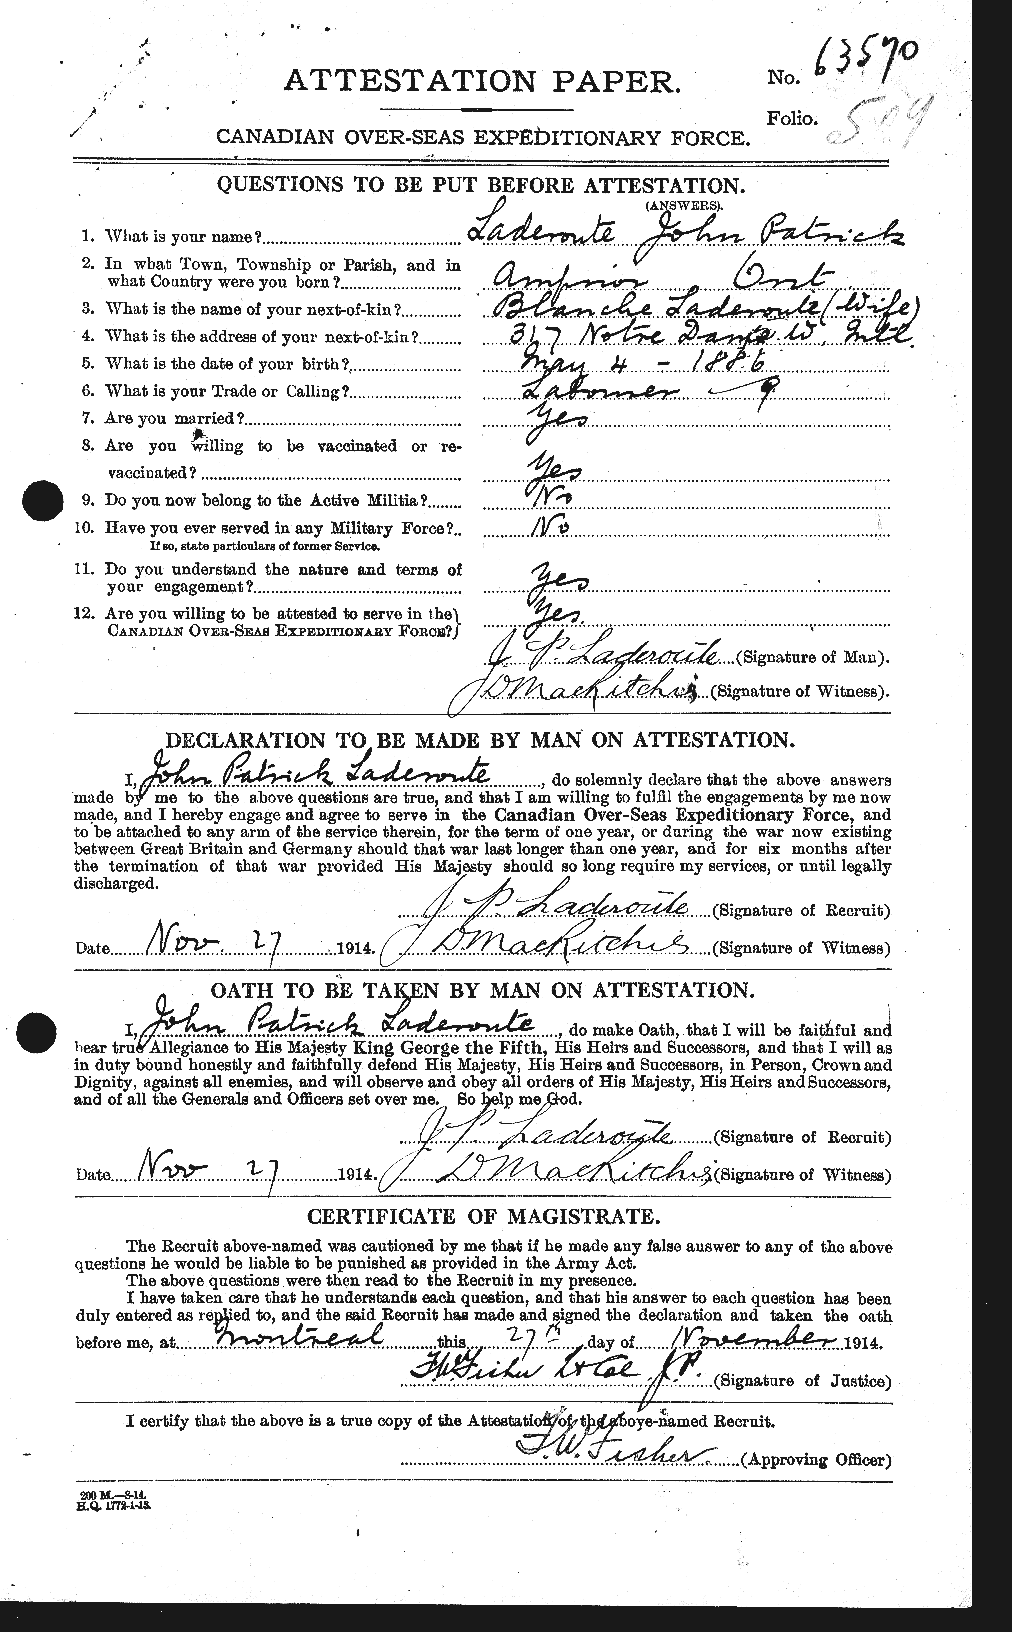 Dossiers du Personnel de la Première Guerre mondiale - CEC 444698a